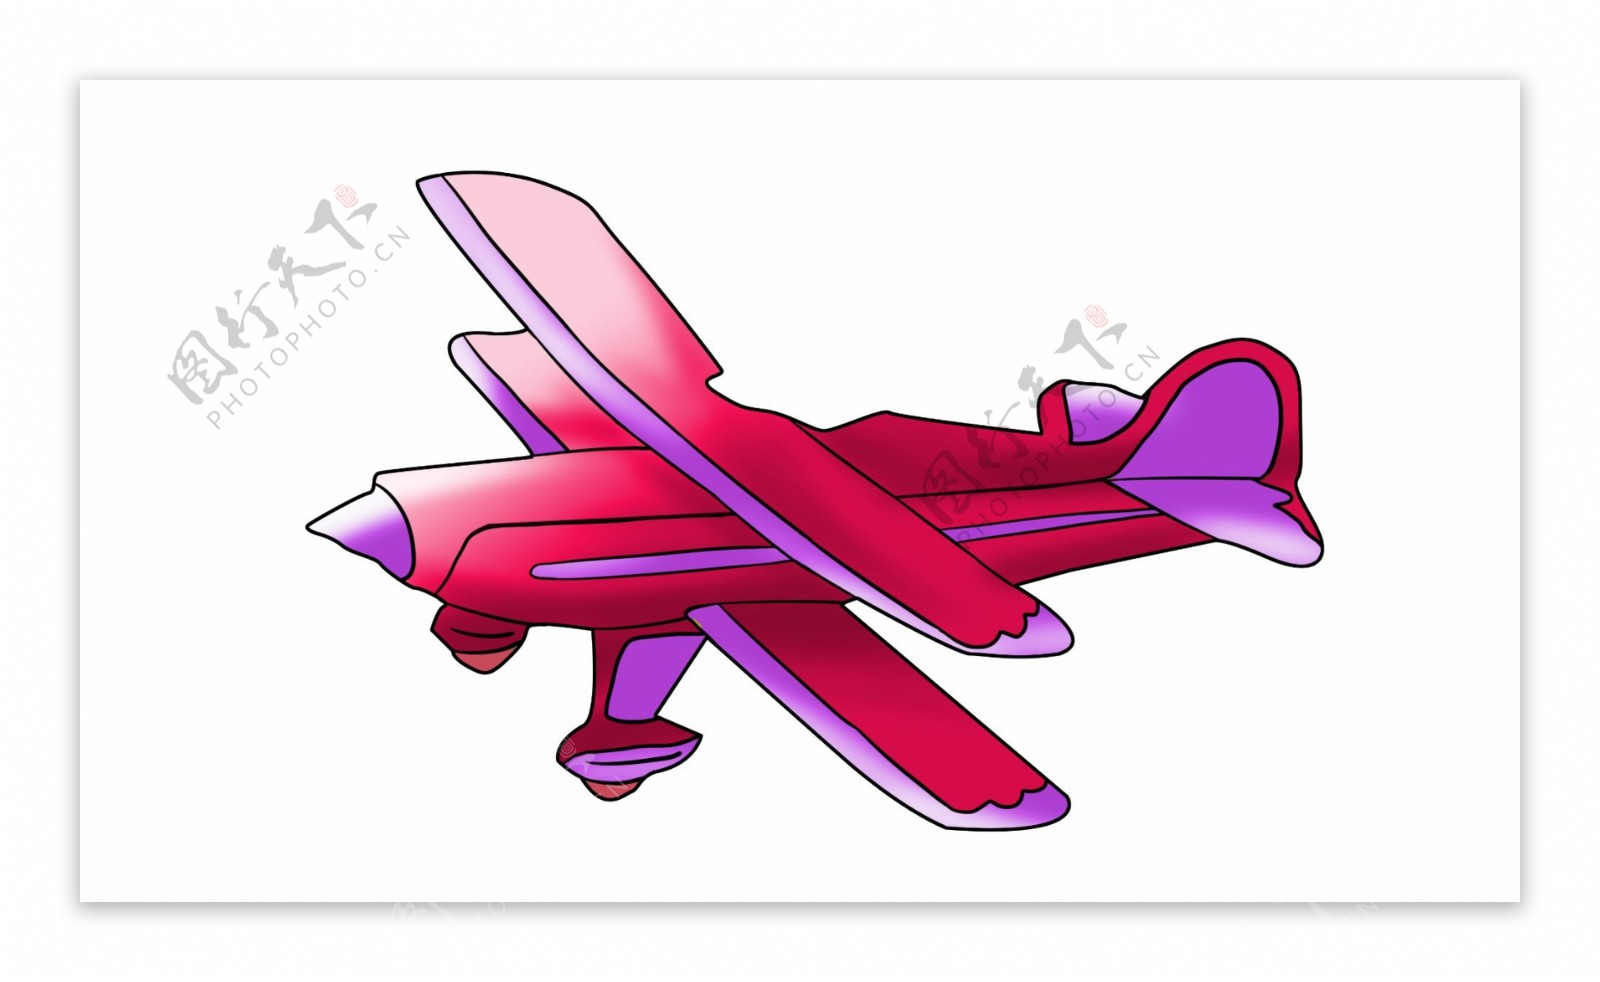 红色滑翔机装饰插画